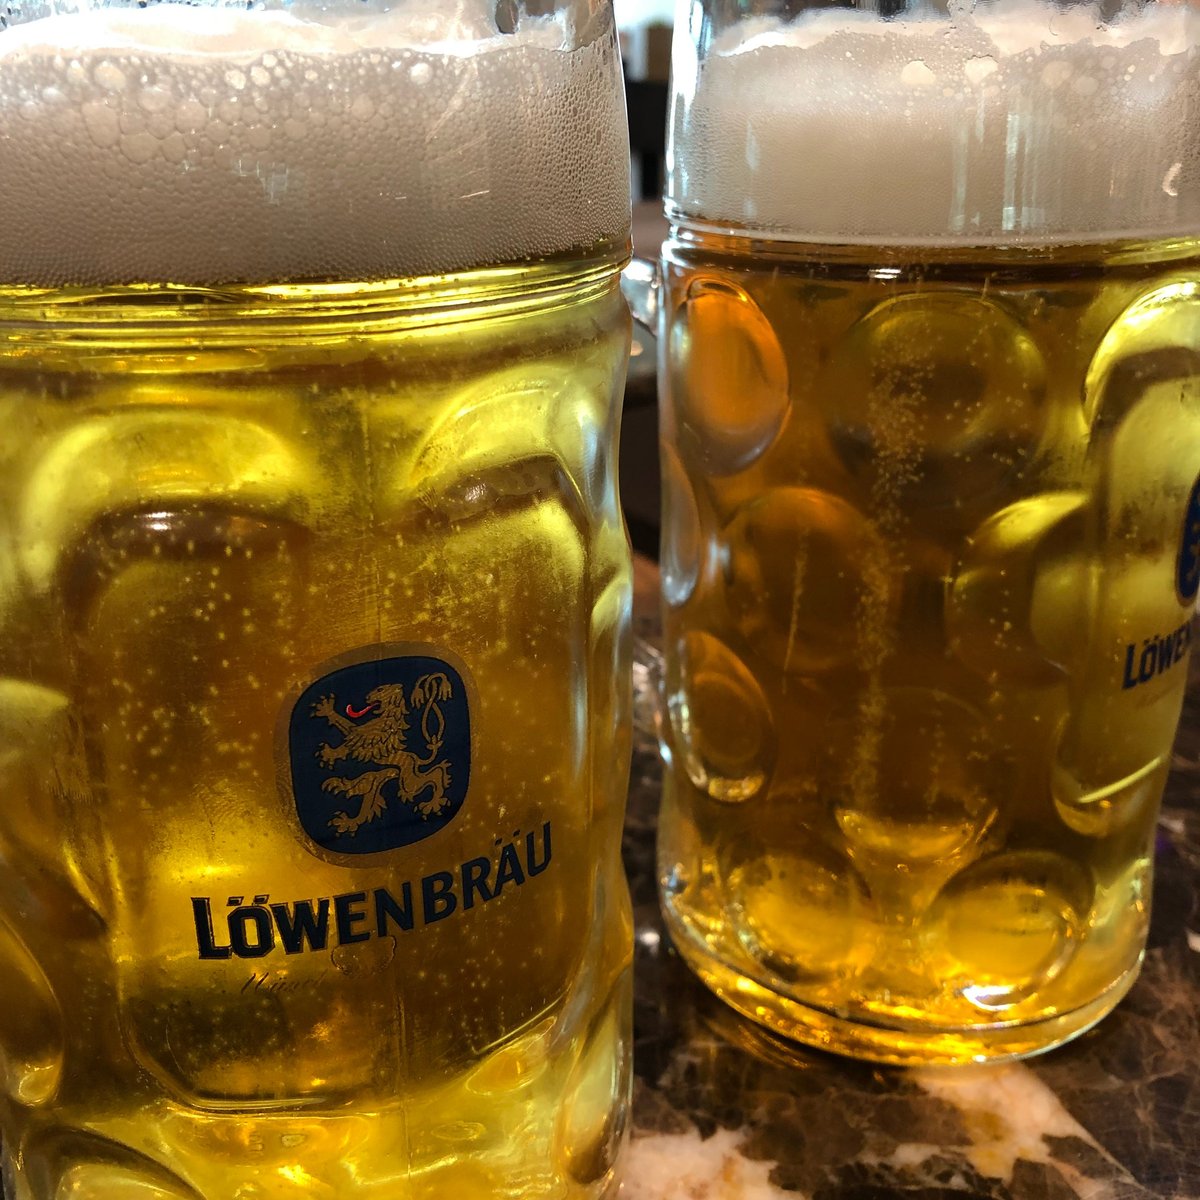 Two large German beers